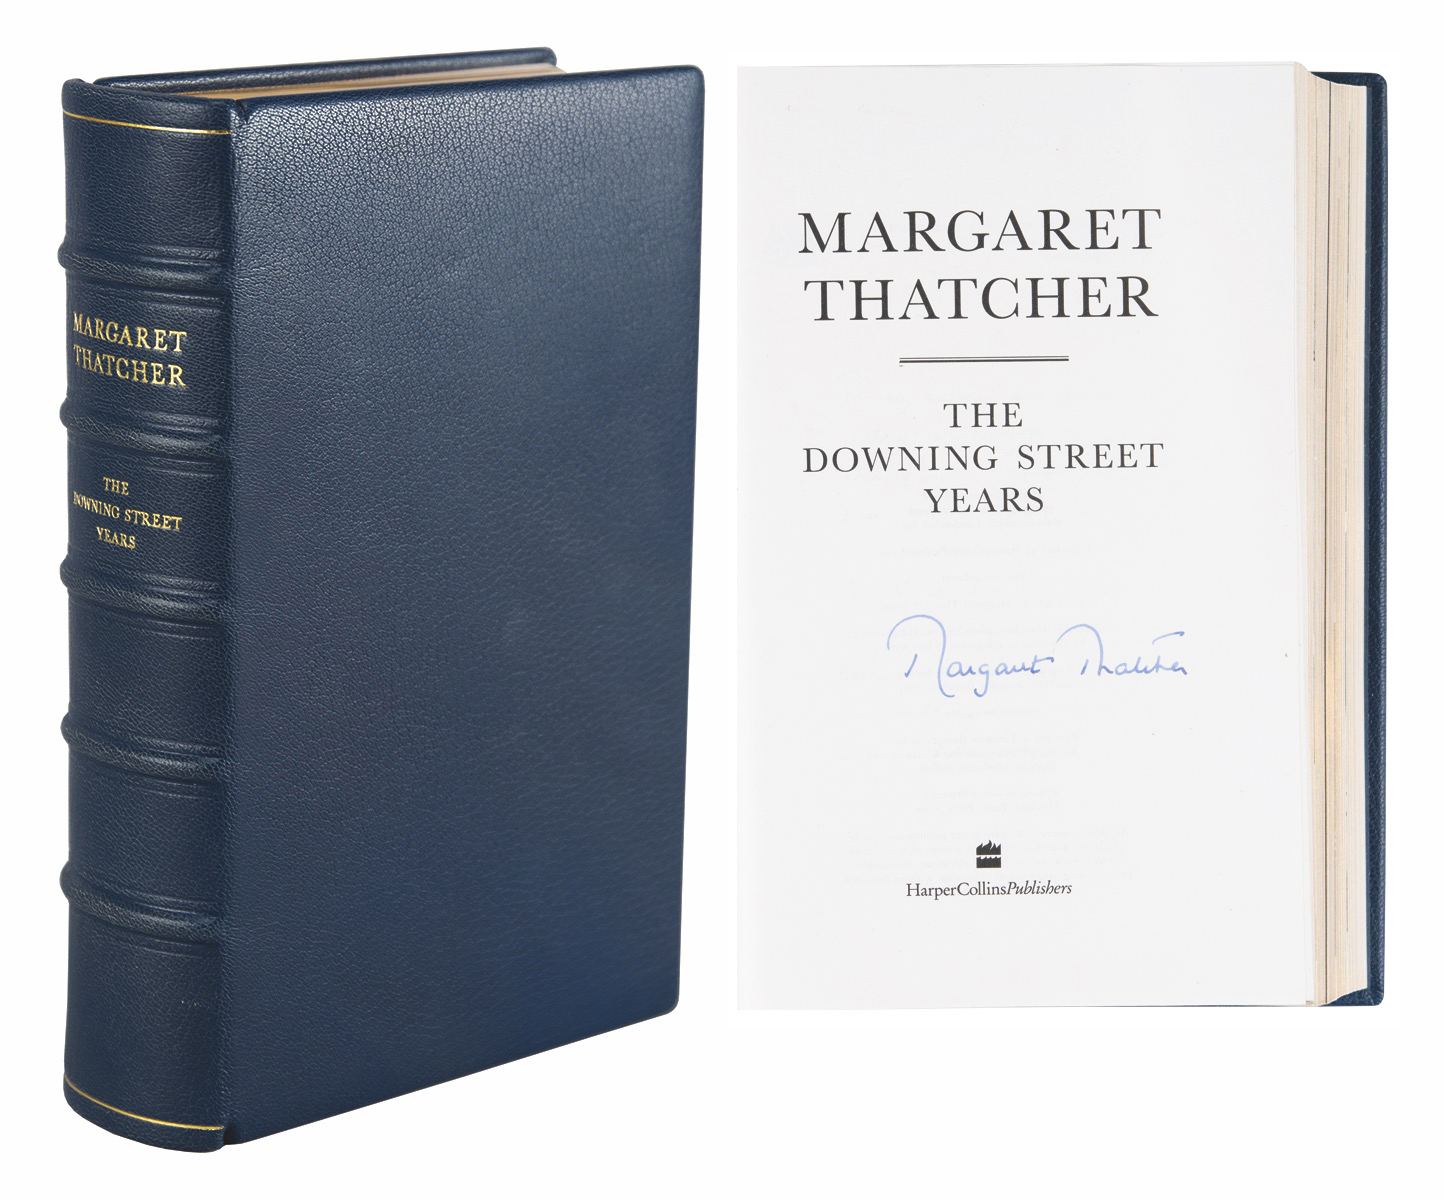 Lot #218 Margaret Thatcher Signed Book